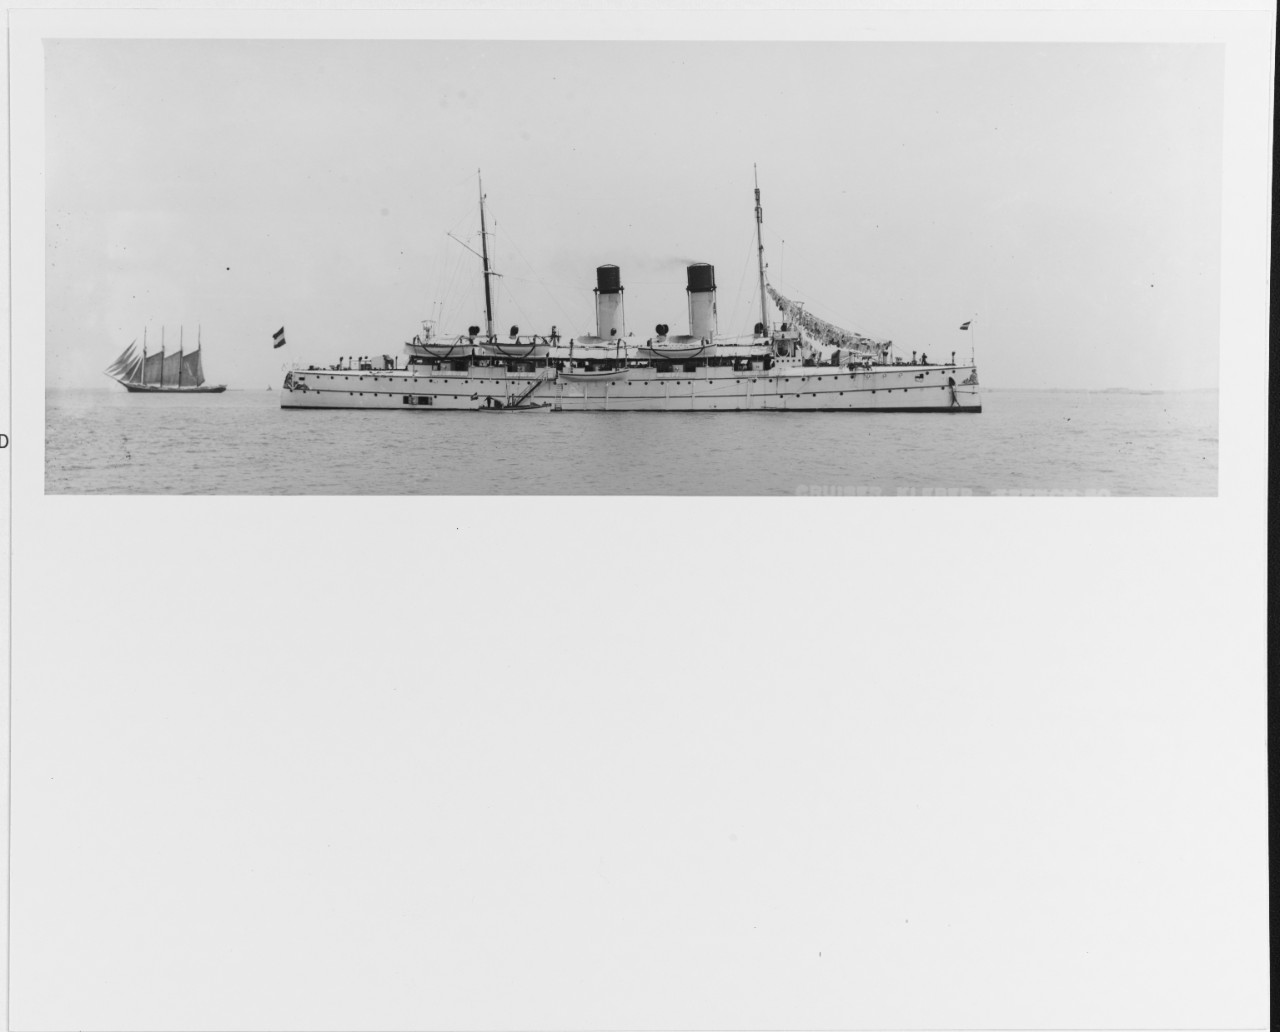 GELDERLAND (Dutch cruiser, 1898)